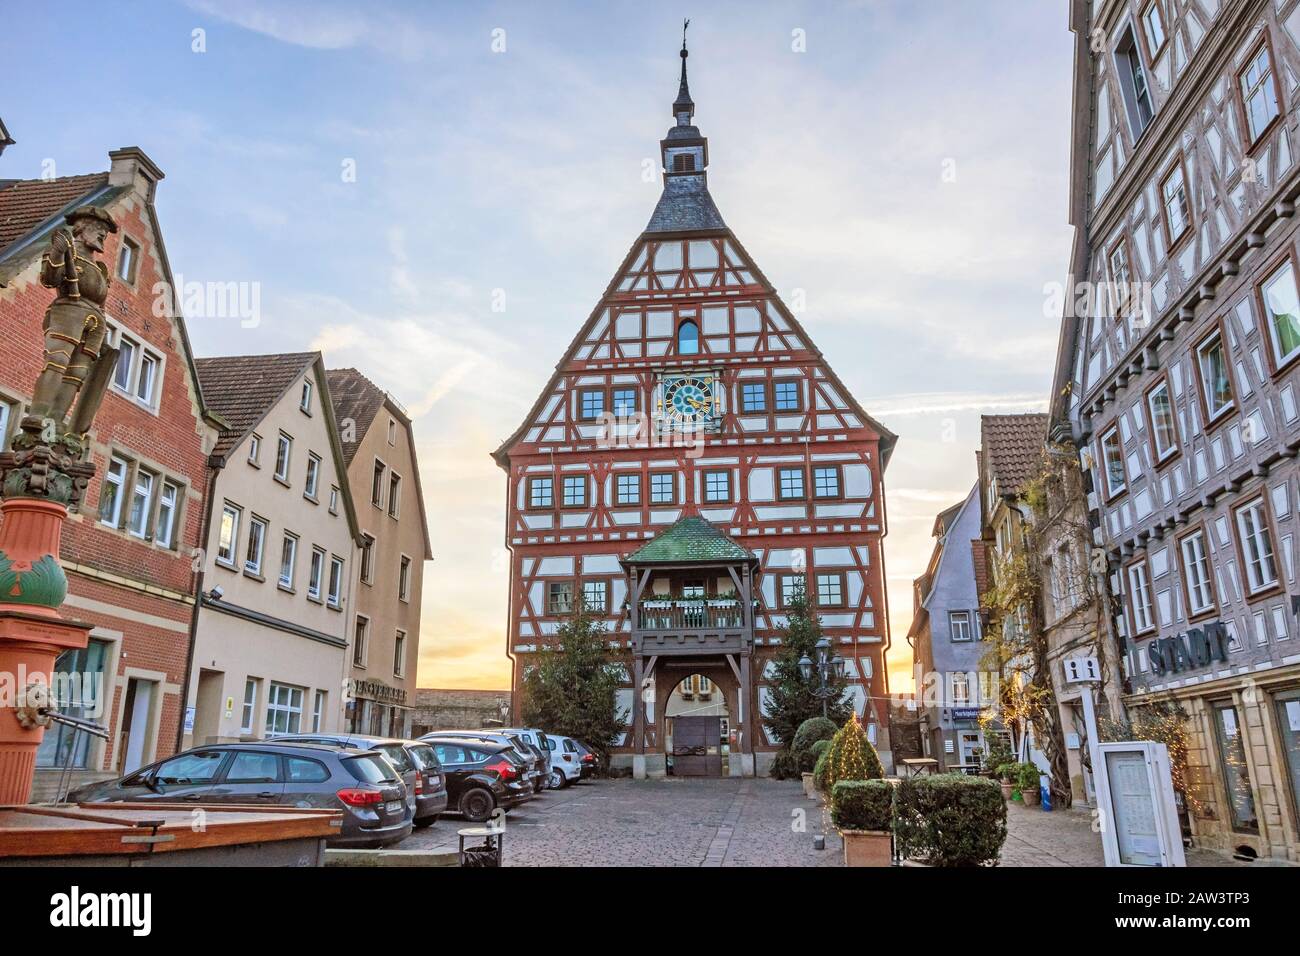 Besigheim, Germania - 27 dicembre 2016: Municipio di Besigheim nel quartiere storico della città. Foto Stock